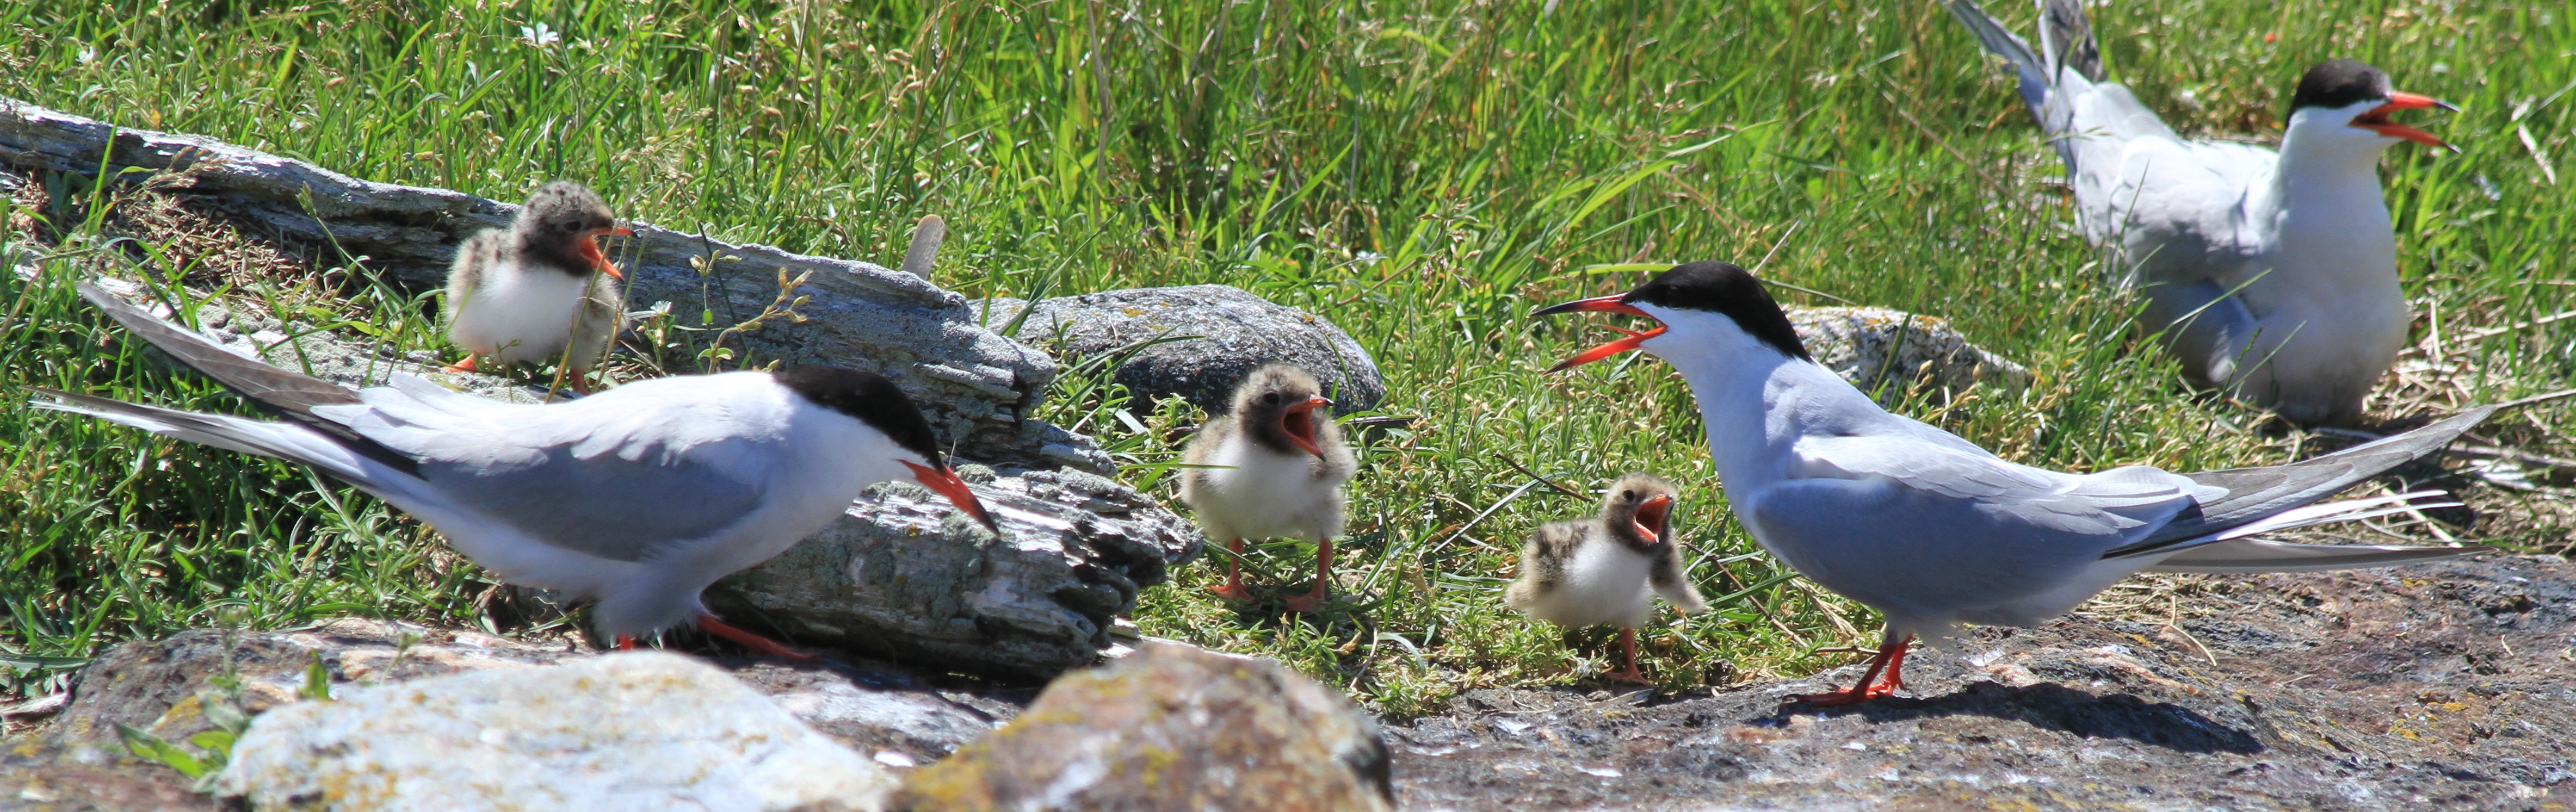 Common Tern family